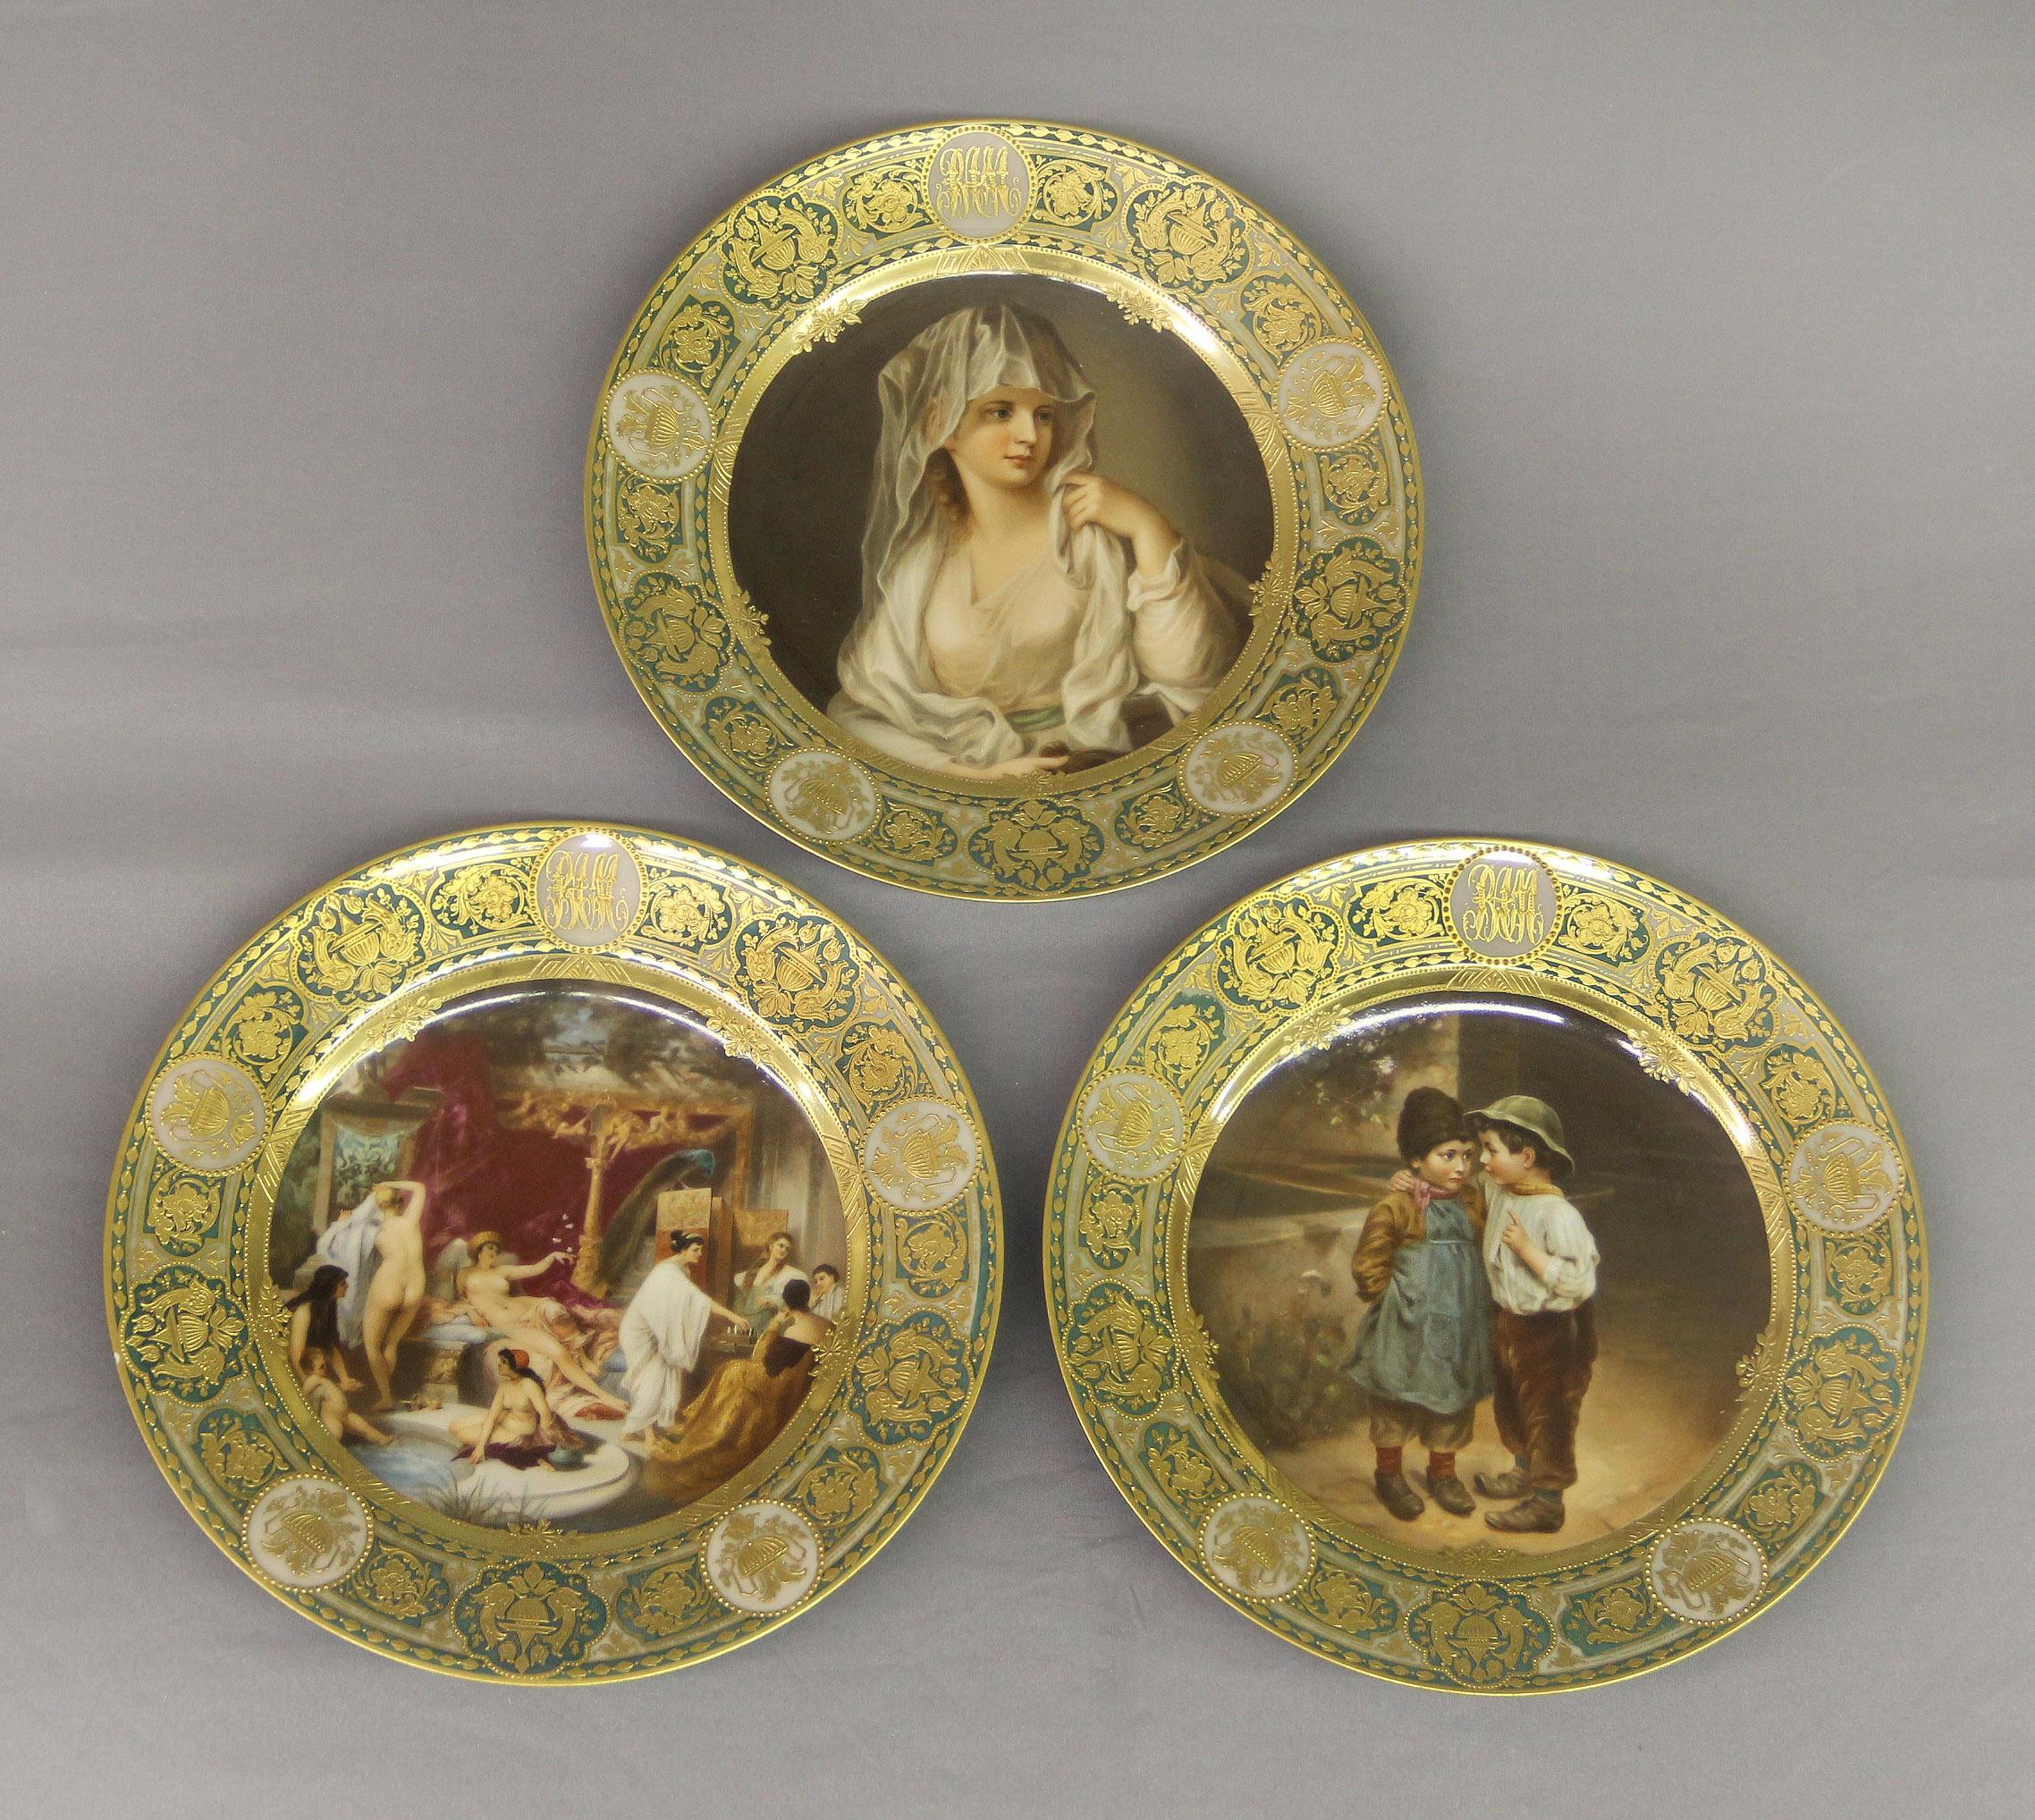 Un ensemble rare et fantastique de douze assiettes de collection en porcelaine allemande de Dresde datant de la fin du XIXe siècle

Chaque assiette est finement peinte d'un portrait et d'une scène historiques ou mythologiques différents, le bord